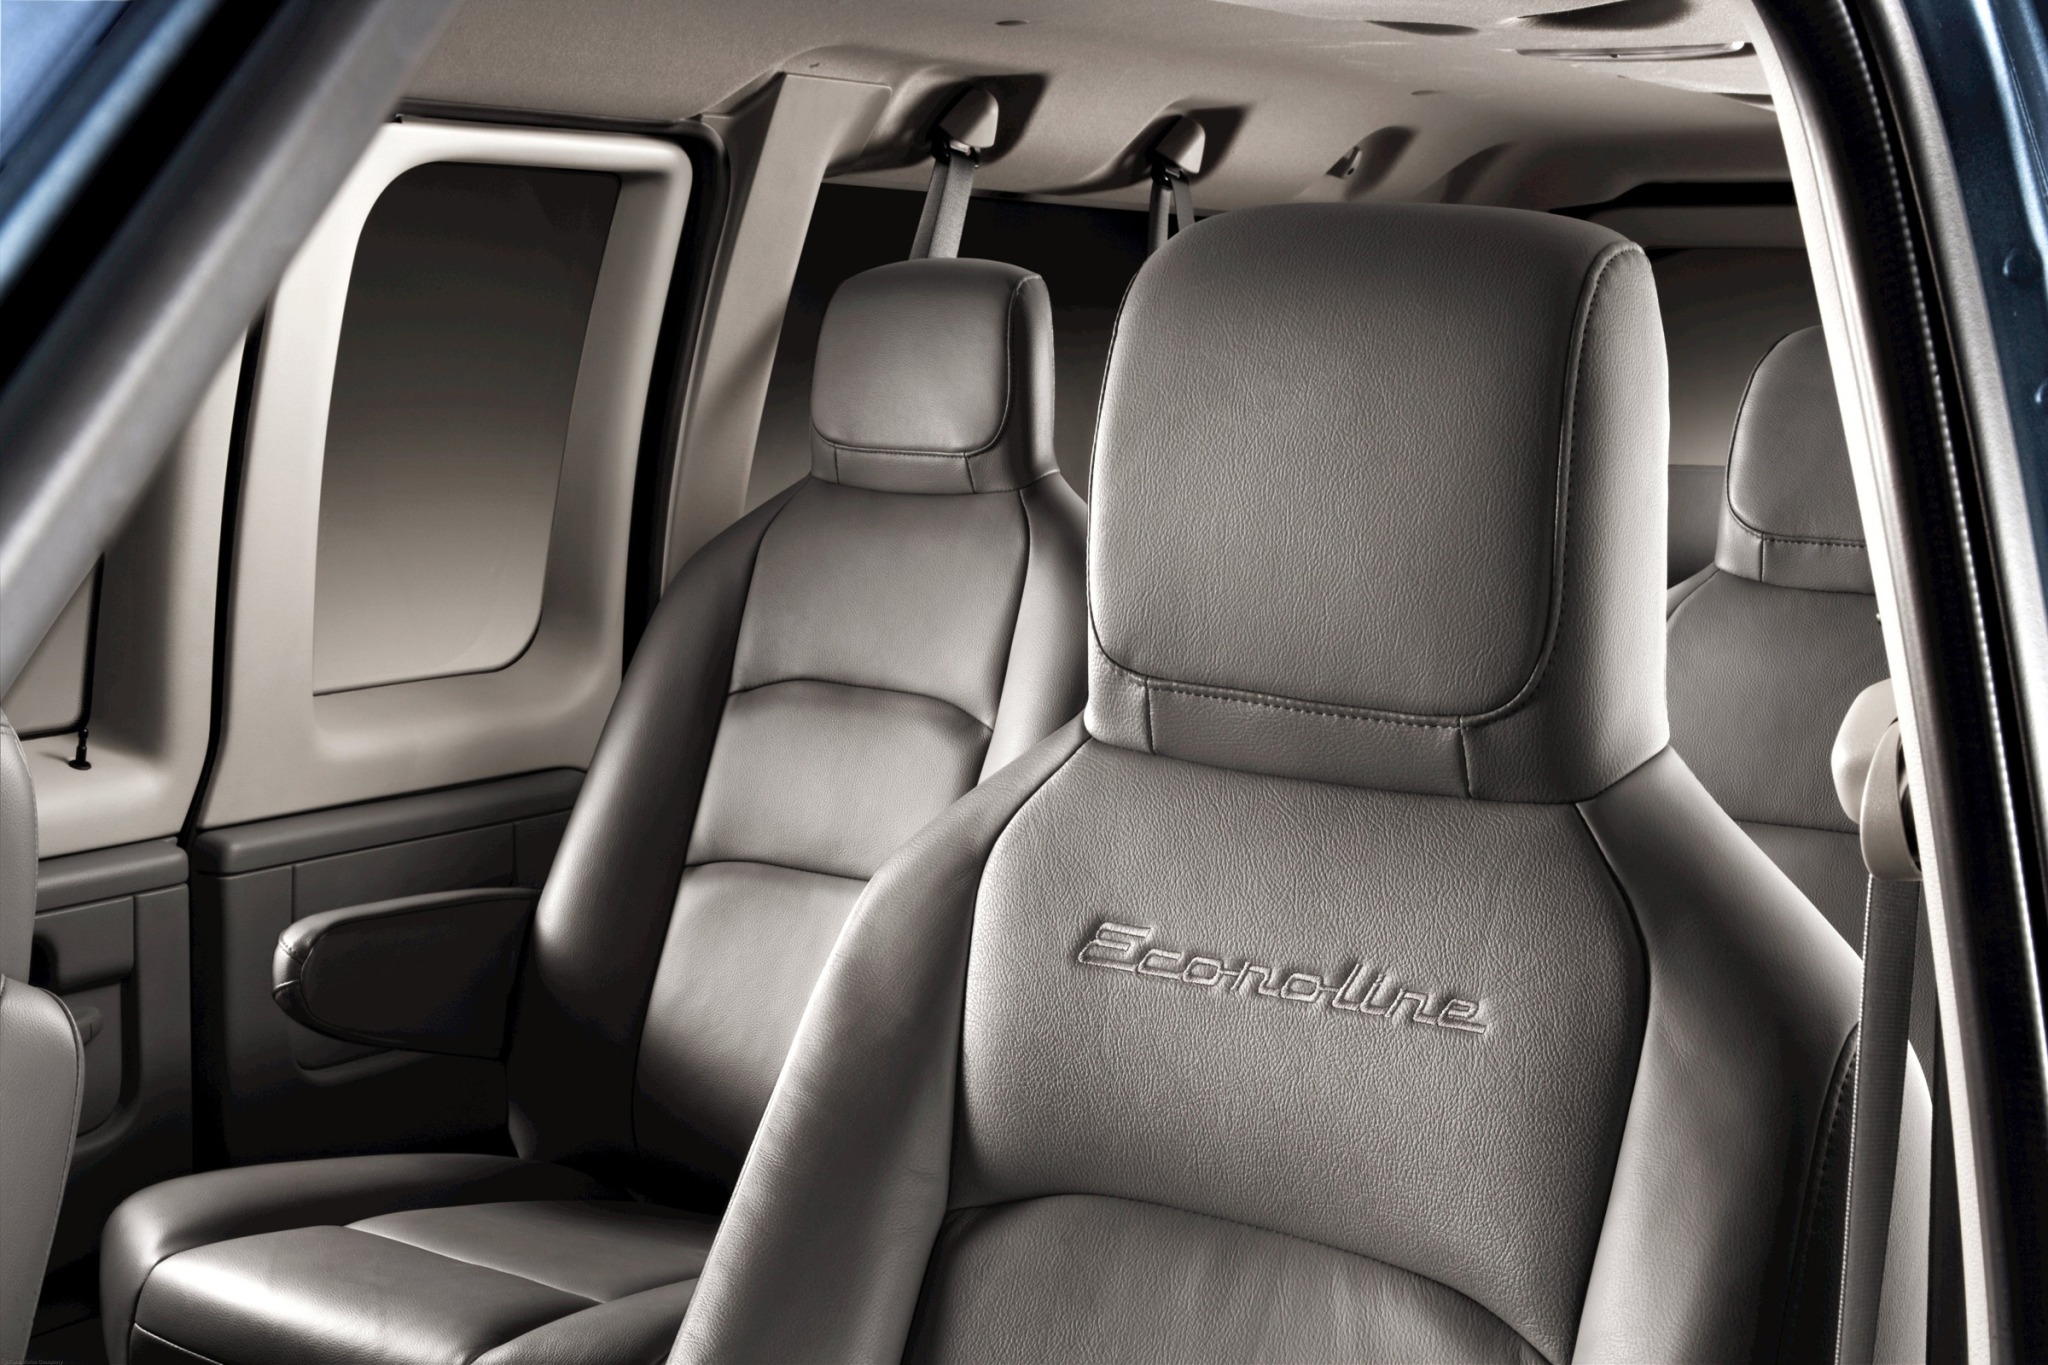 2013 Ford E-Series Wagon E-150 XLT Passenger Van Interior